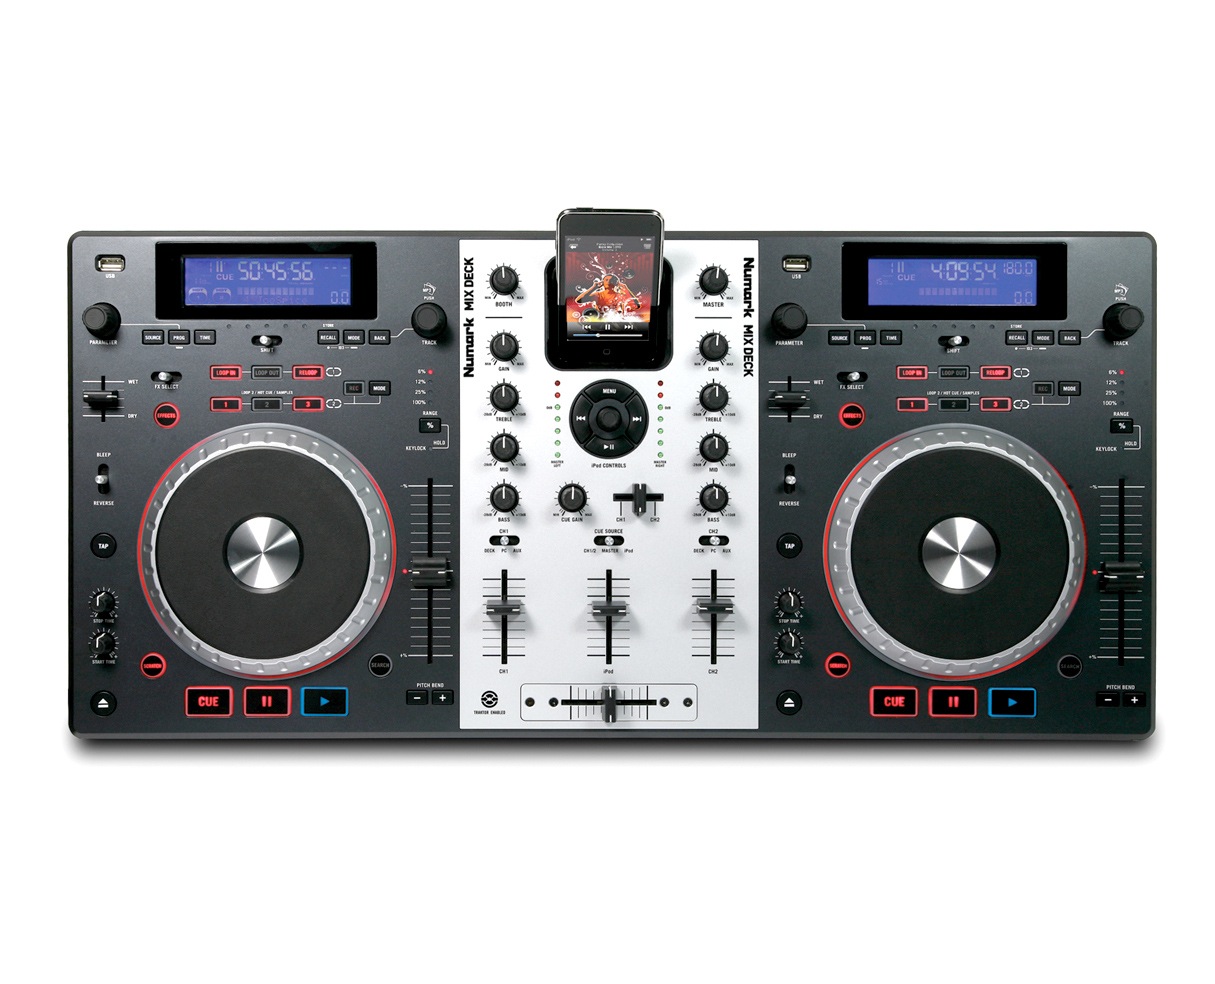 Numark Mixdeck Dual CD  iPod USB DJ System Mix Deck